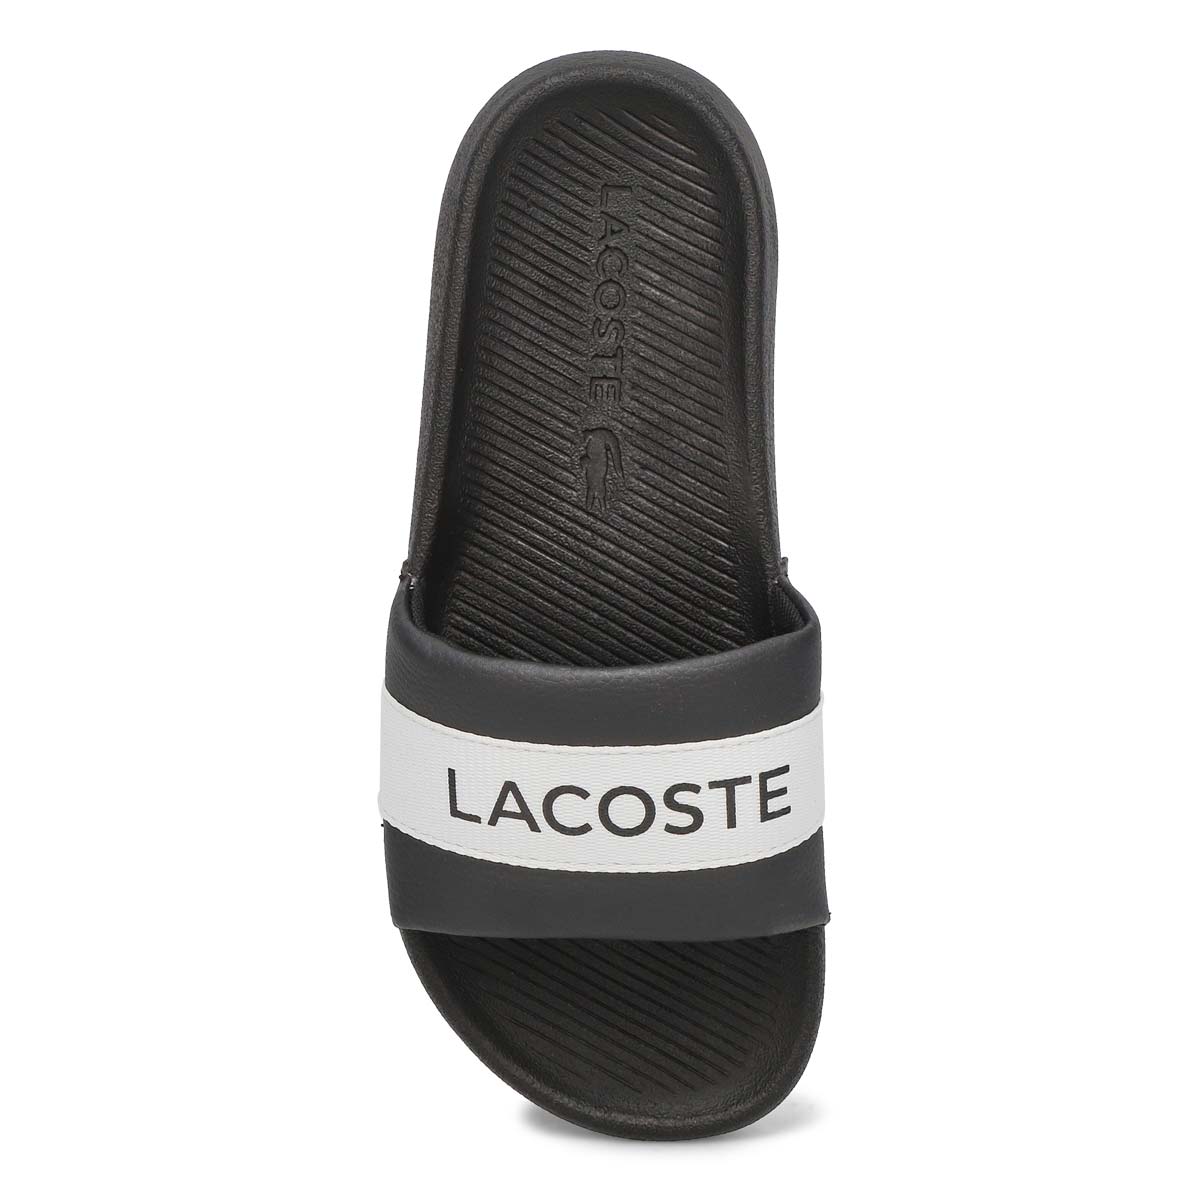 Women's Croco Slide Sandal - Black/White